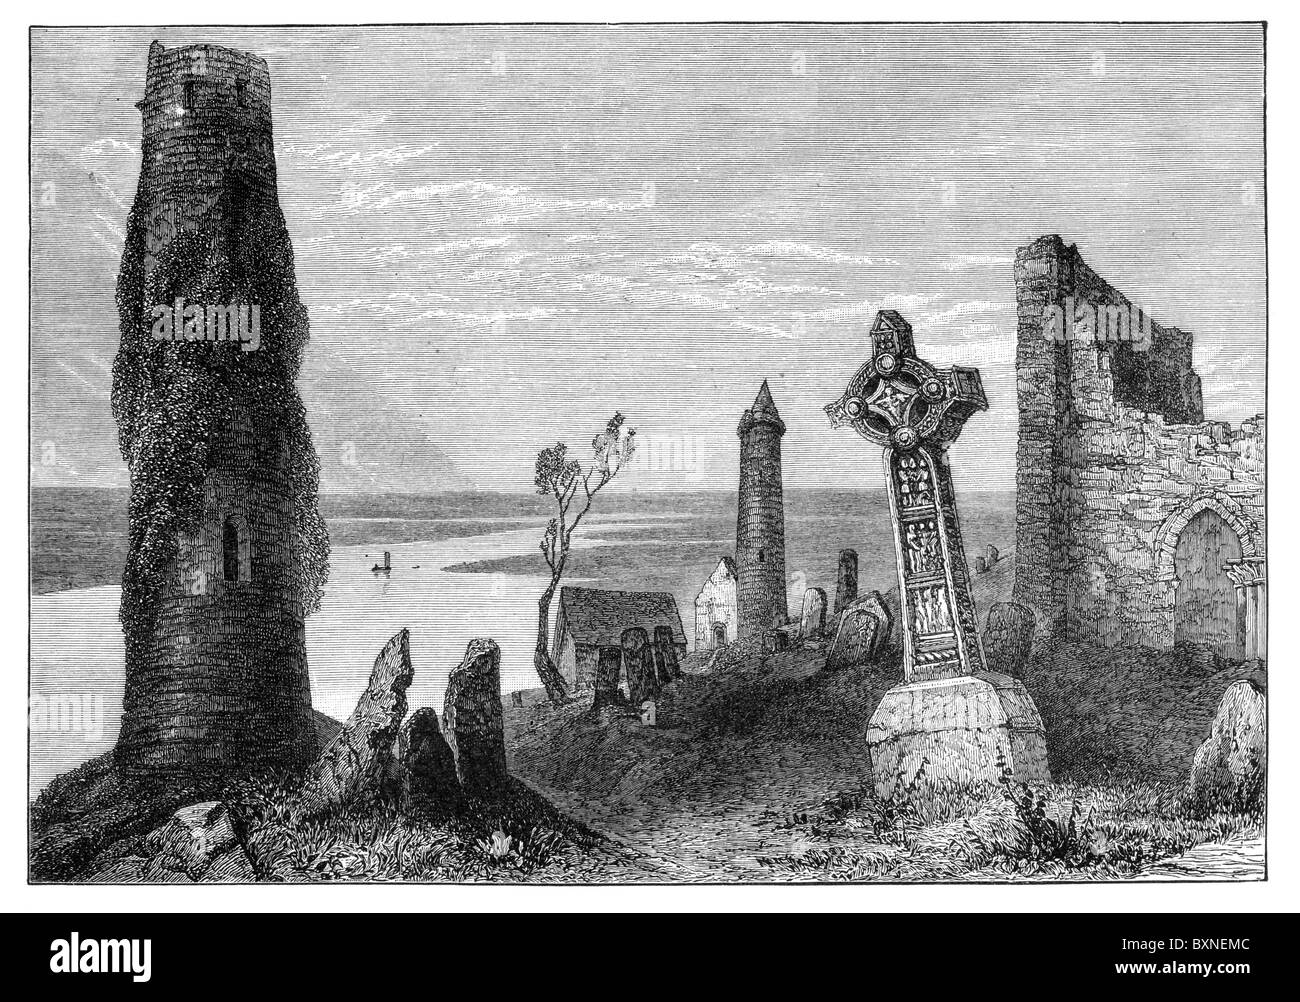 Monastère de Clonmacnoise, County Offaly, Irlande après une gravure de William Henry Bartlett ; noir et blanc Illustration ; Banque D'Images